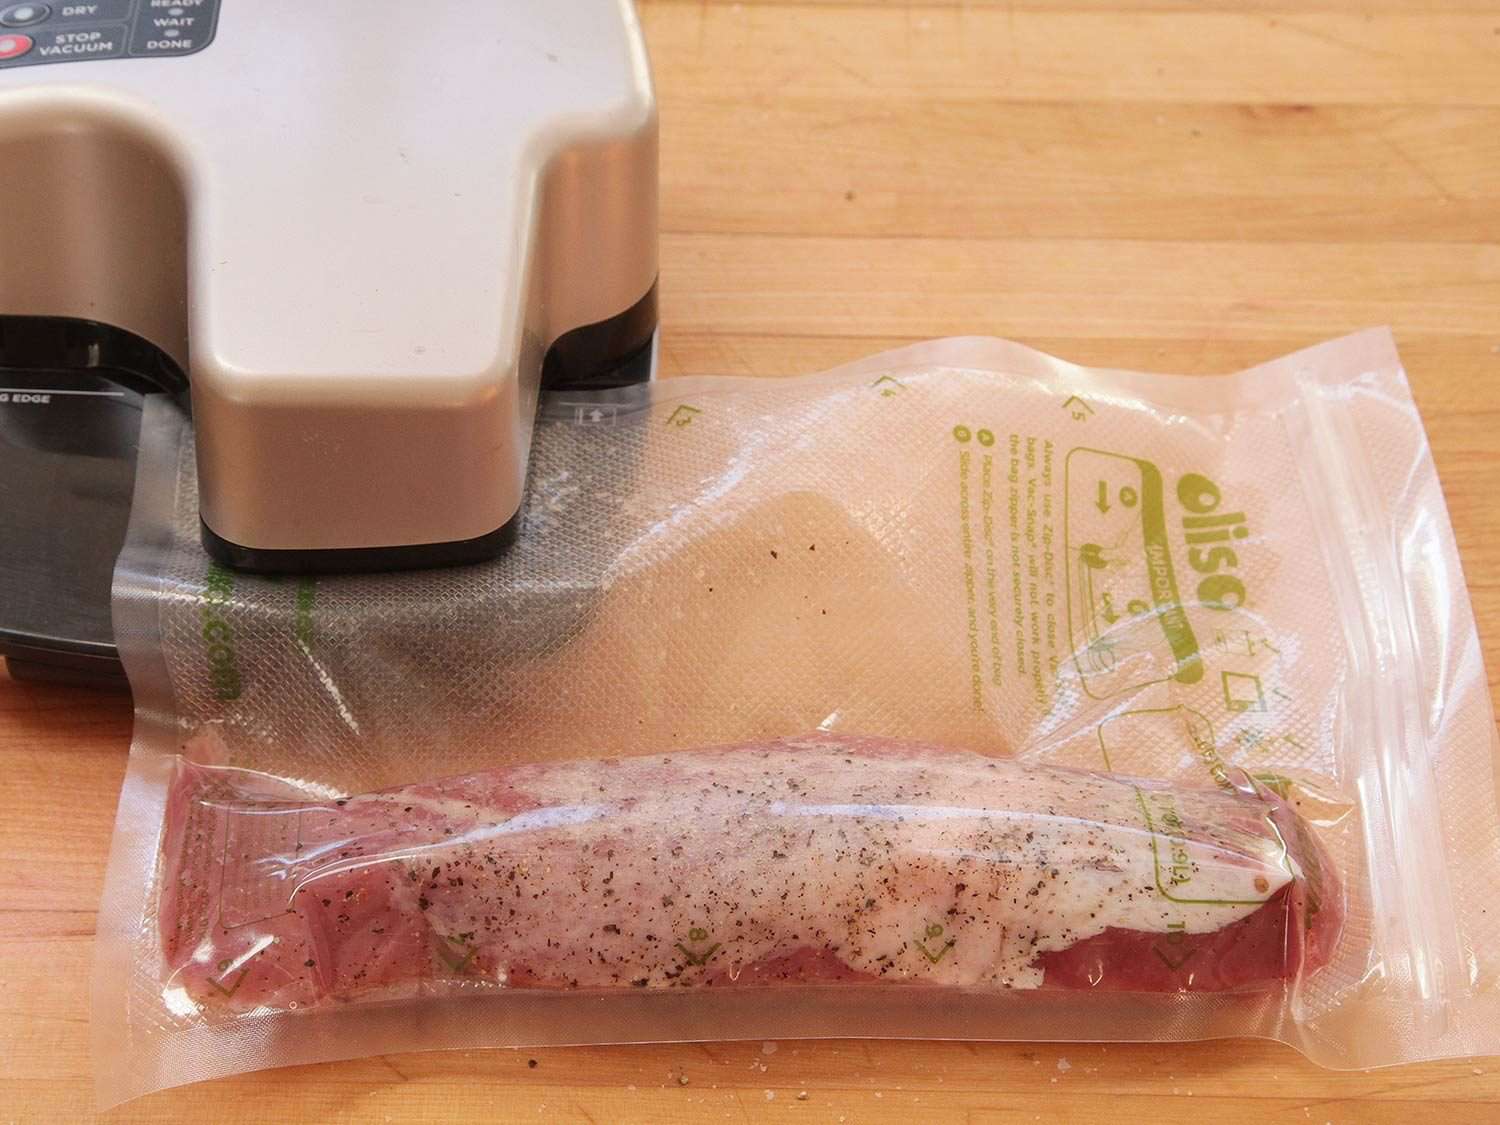 在用真空烹调前，先密封一个装有调味好的猪里脊肉的真空烹调袋。